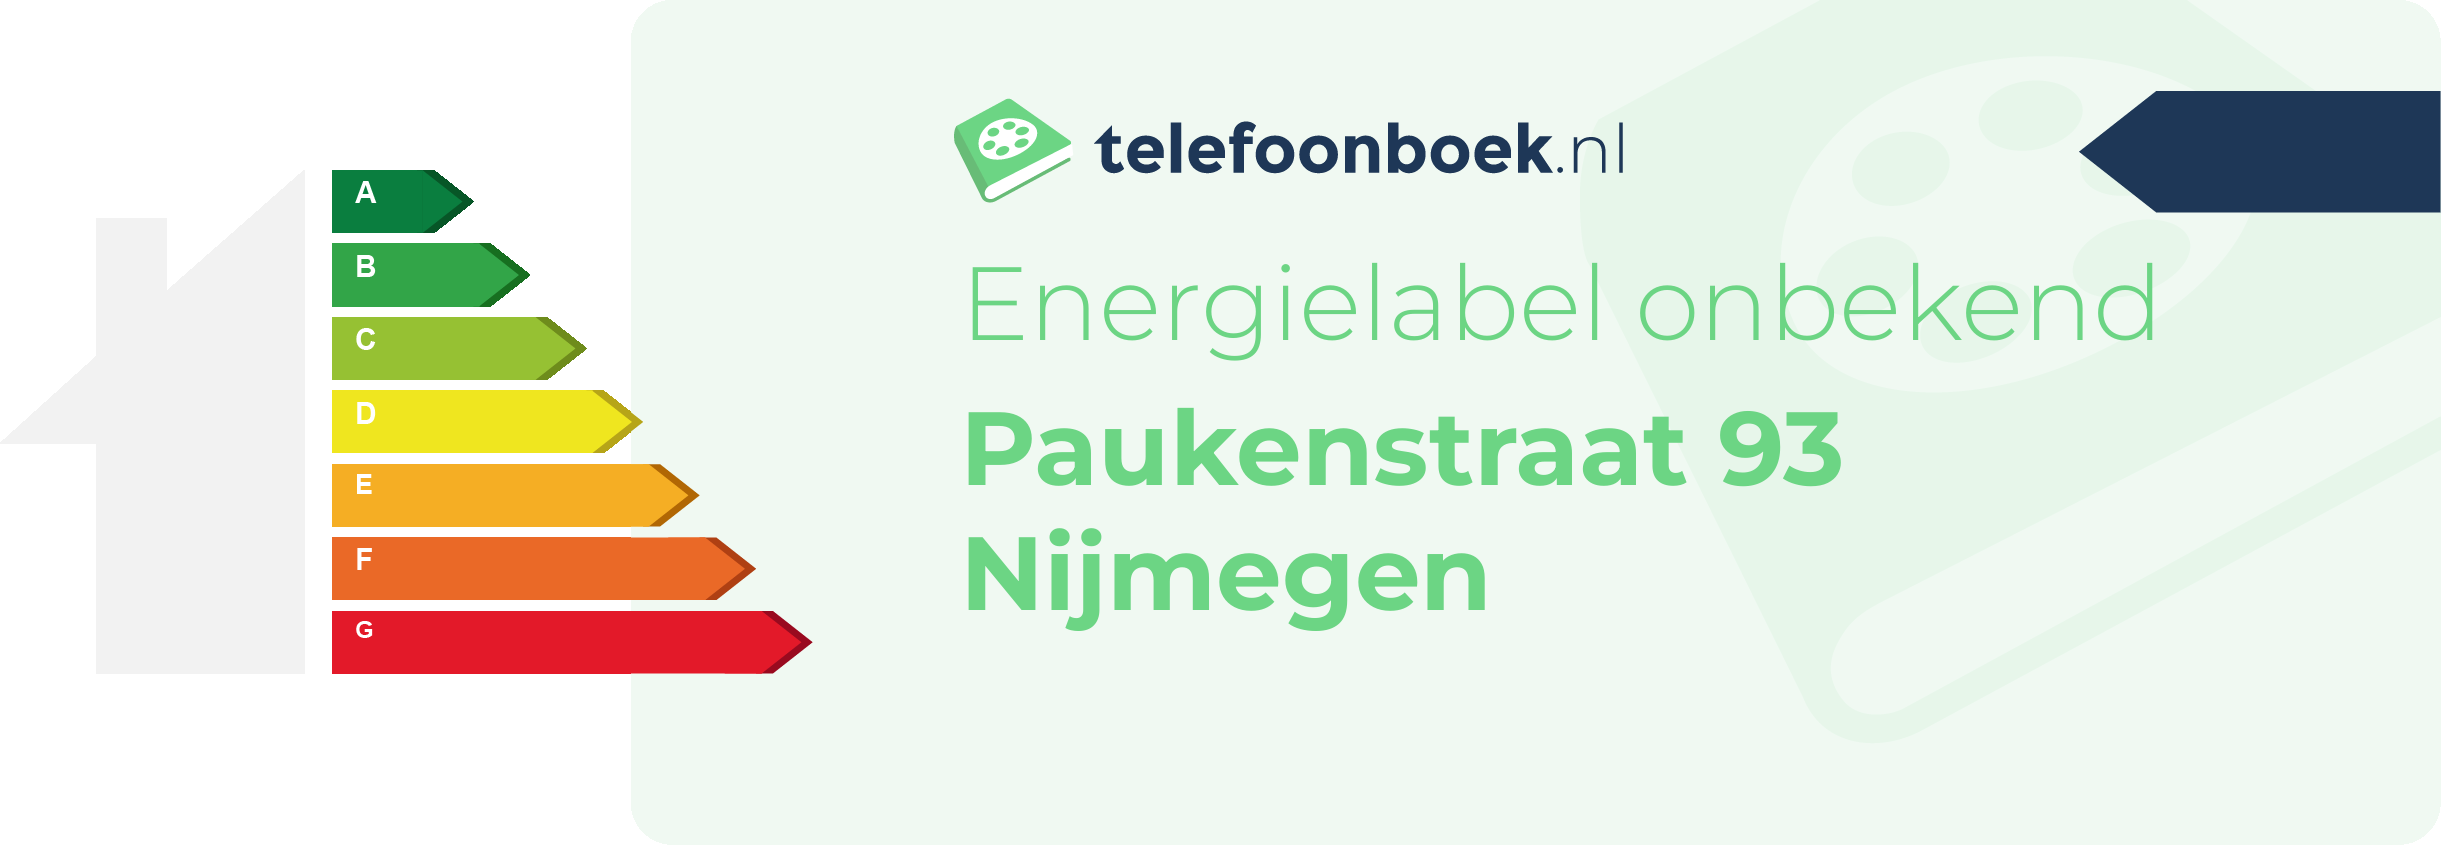 Energielabel Paukenstraat 93 Nijmegen